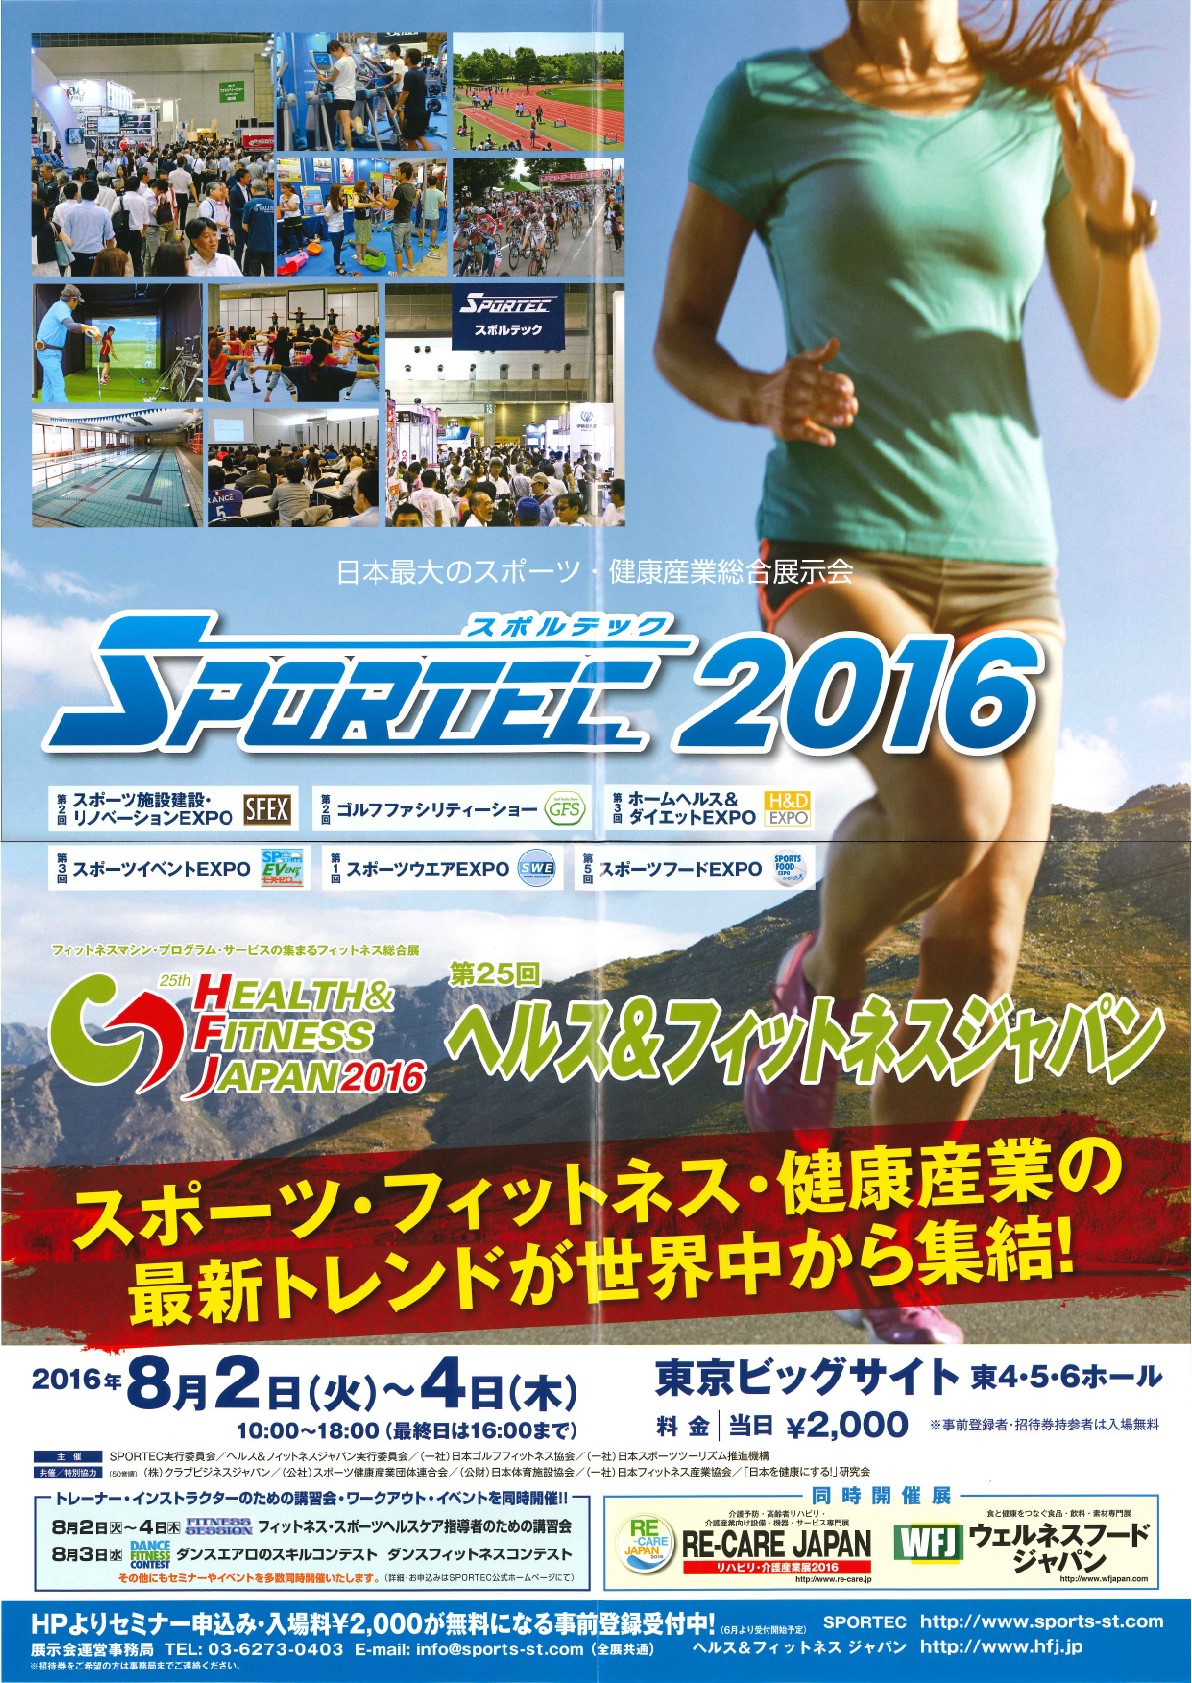 Sportec2016ポスター